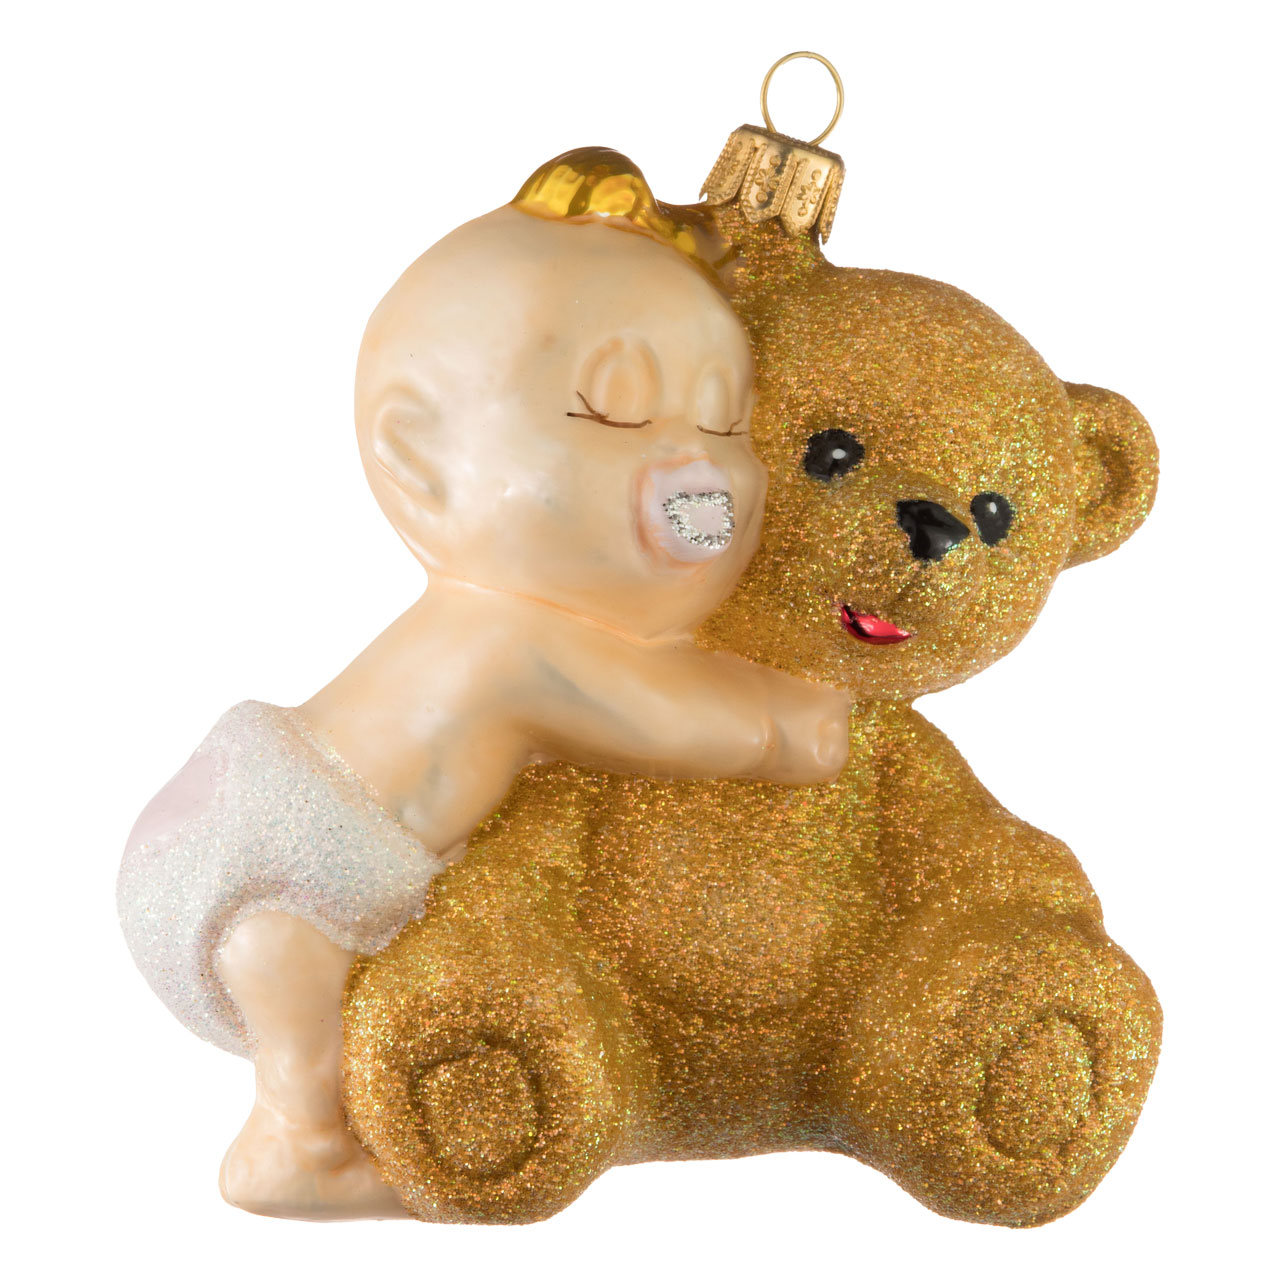 Baby with teddy bear